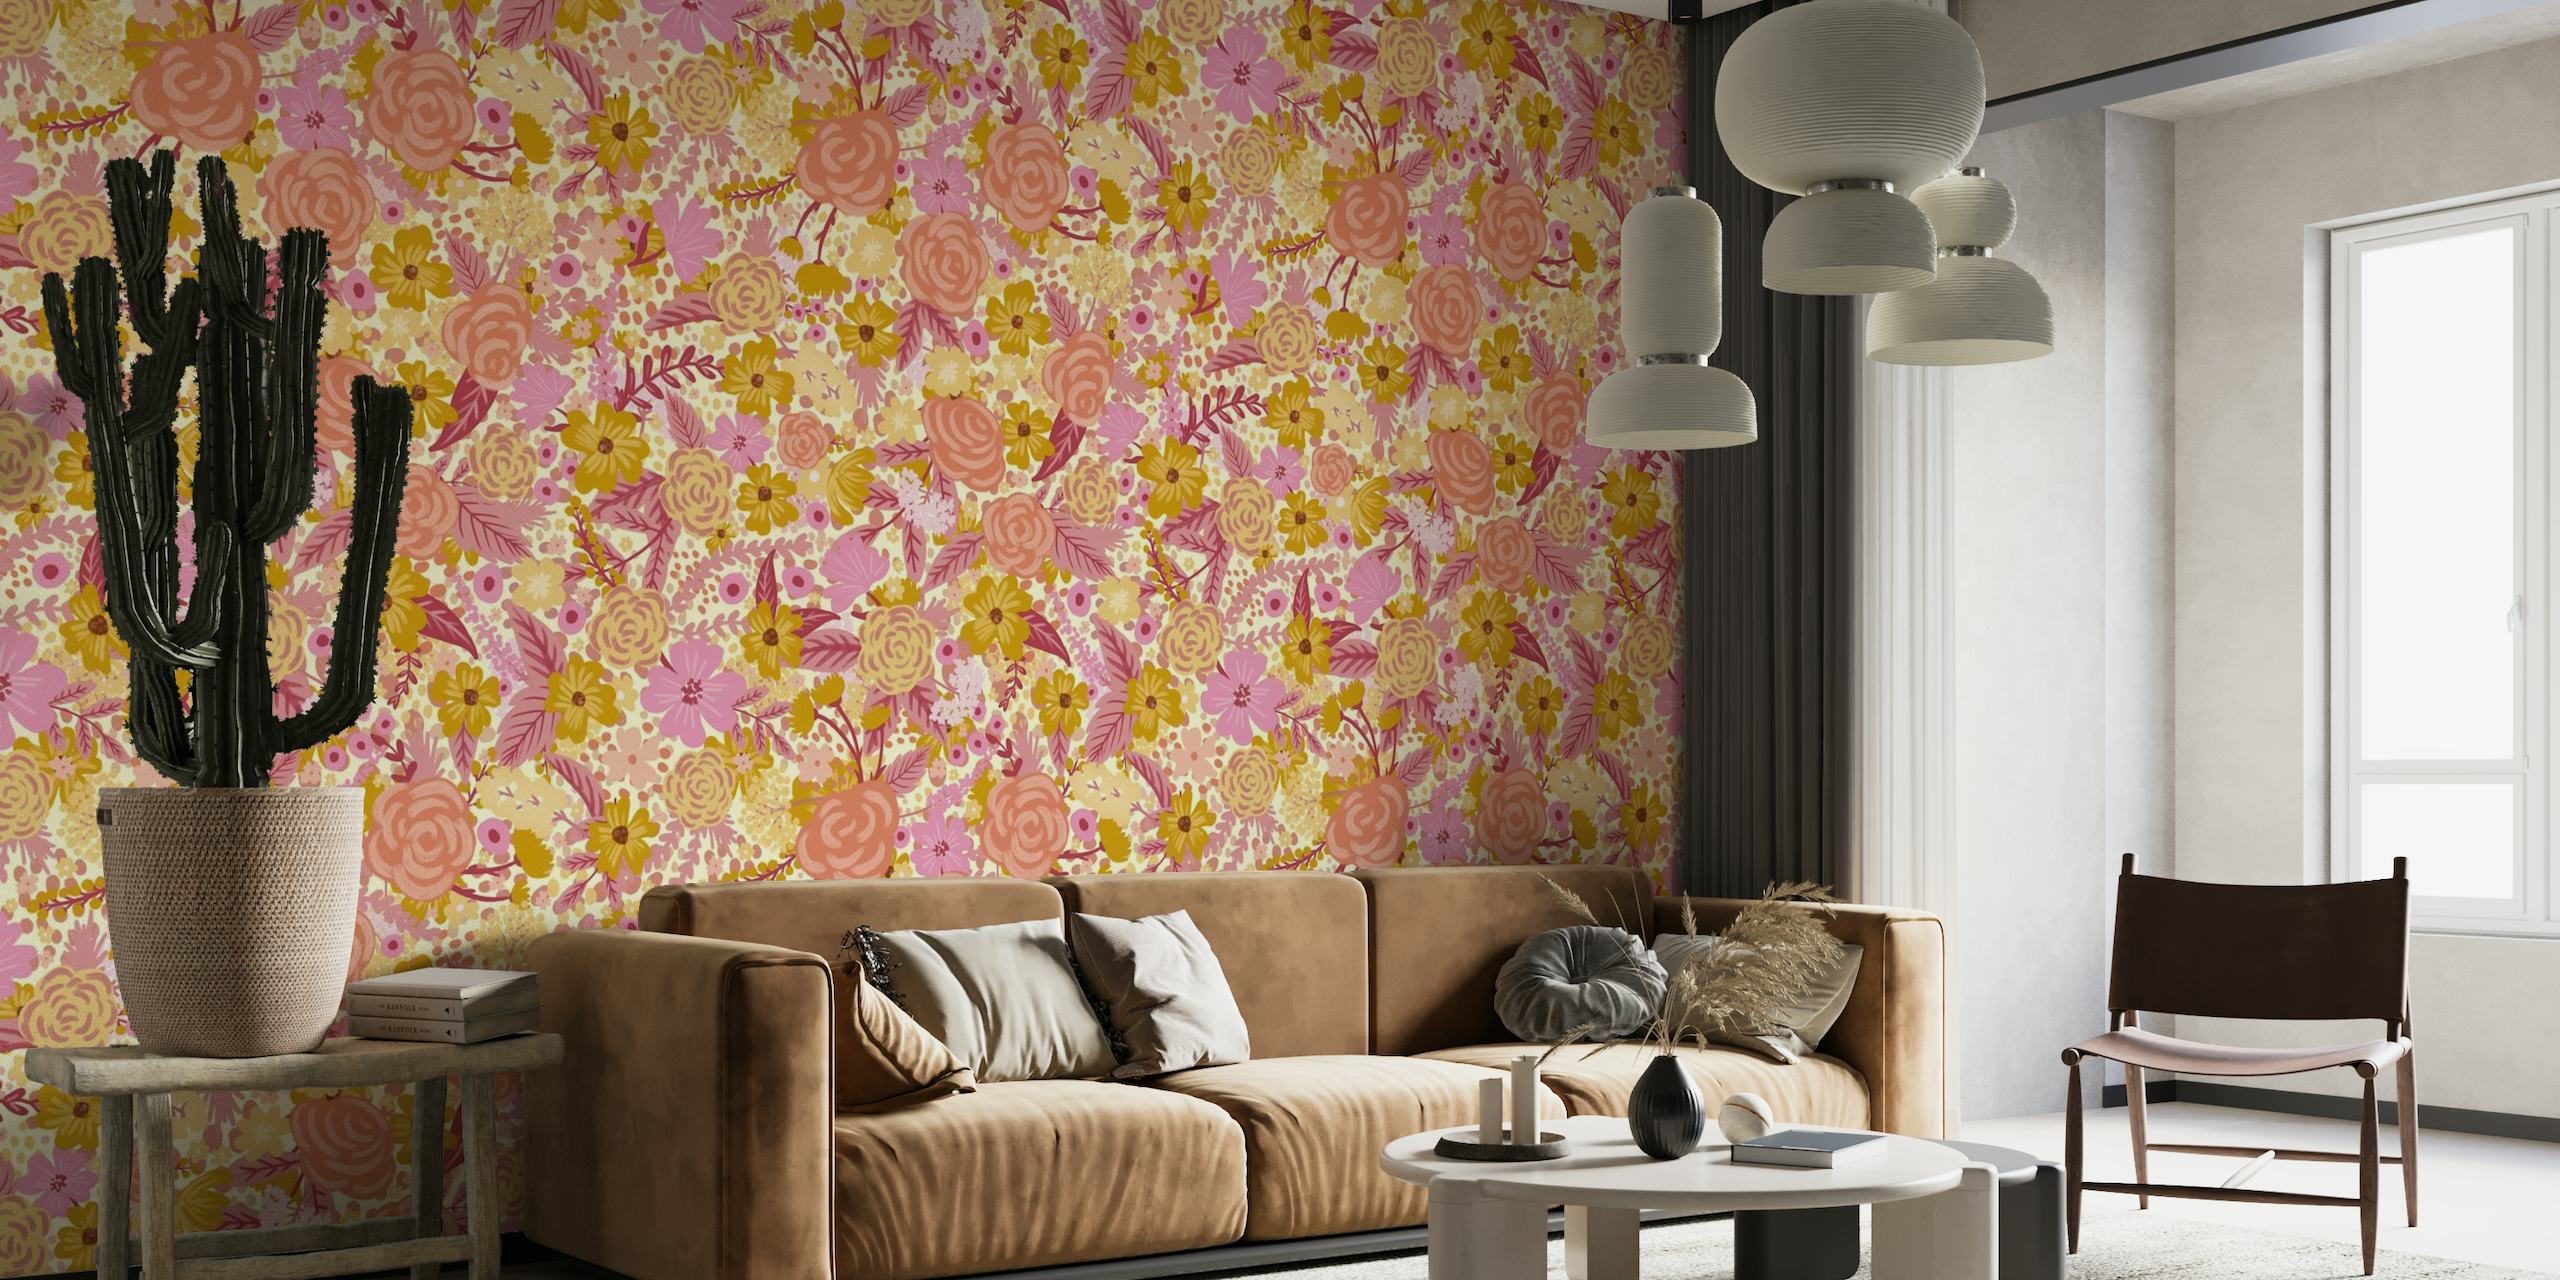 Mural floral abstracto con rosas suaves, dorados y tonos neutros, con rosas y margaritas en un patrón intangible